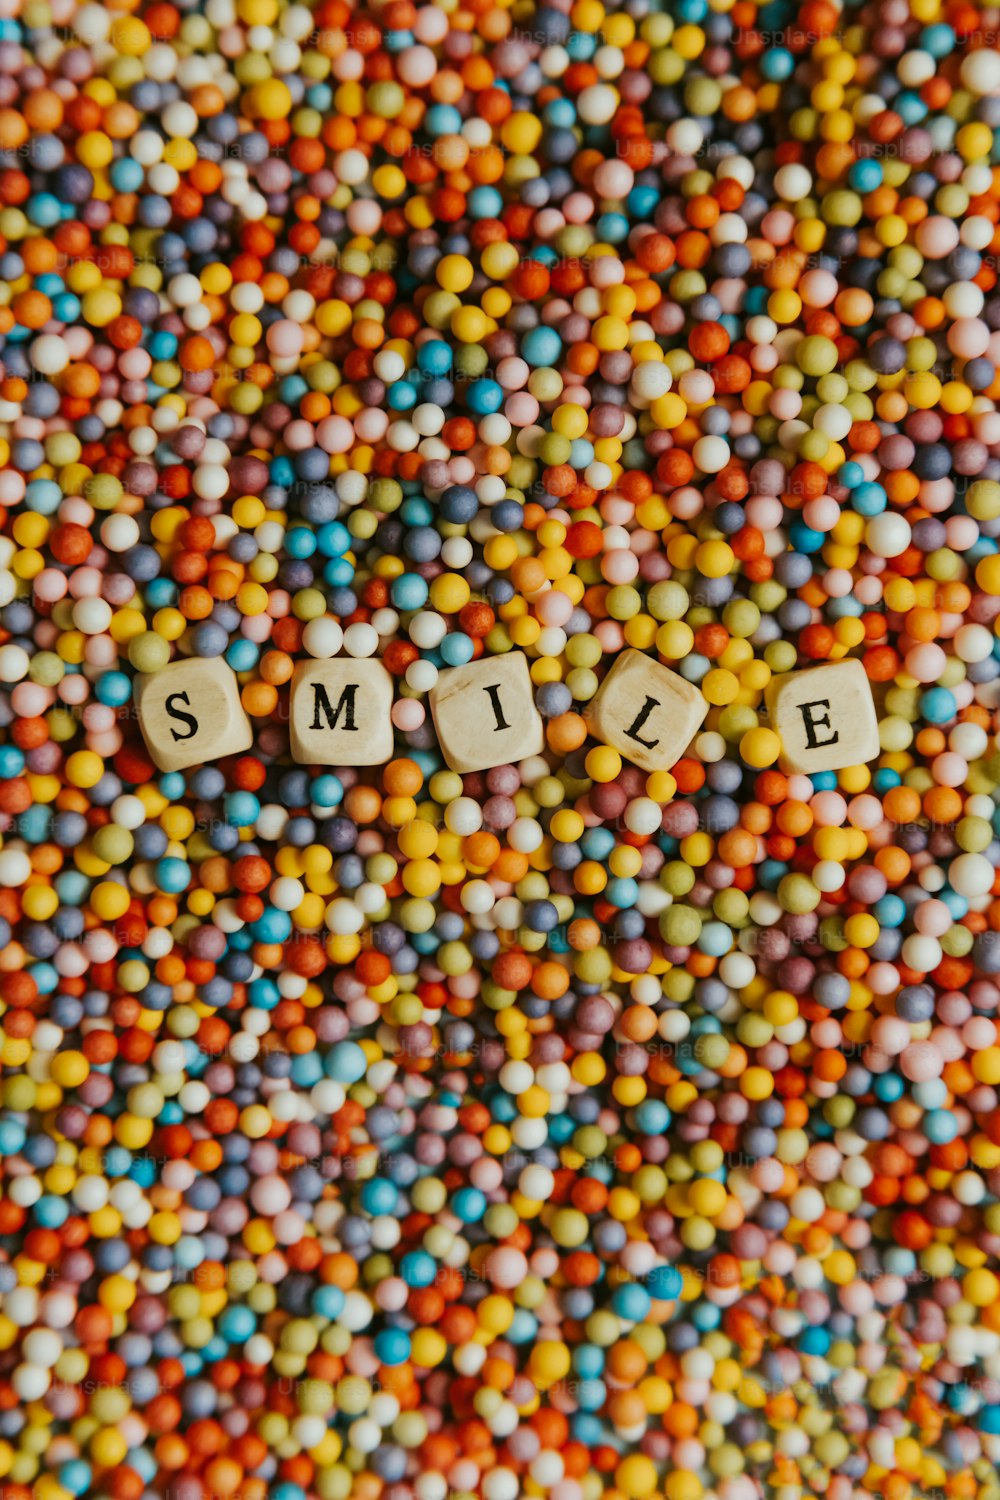 Das Wort Lächeln in kleinen Buchstaben, umgeben von Süßigkeiten